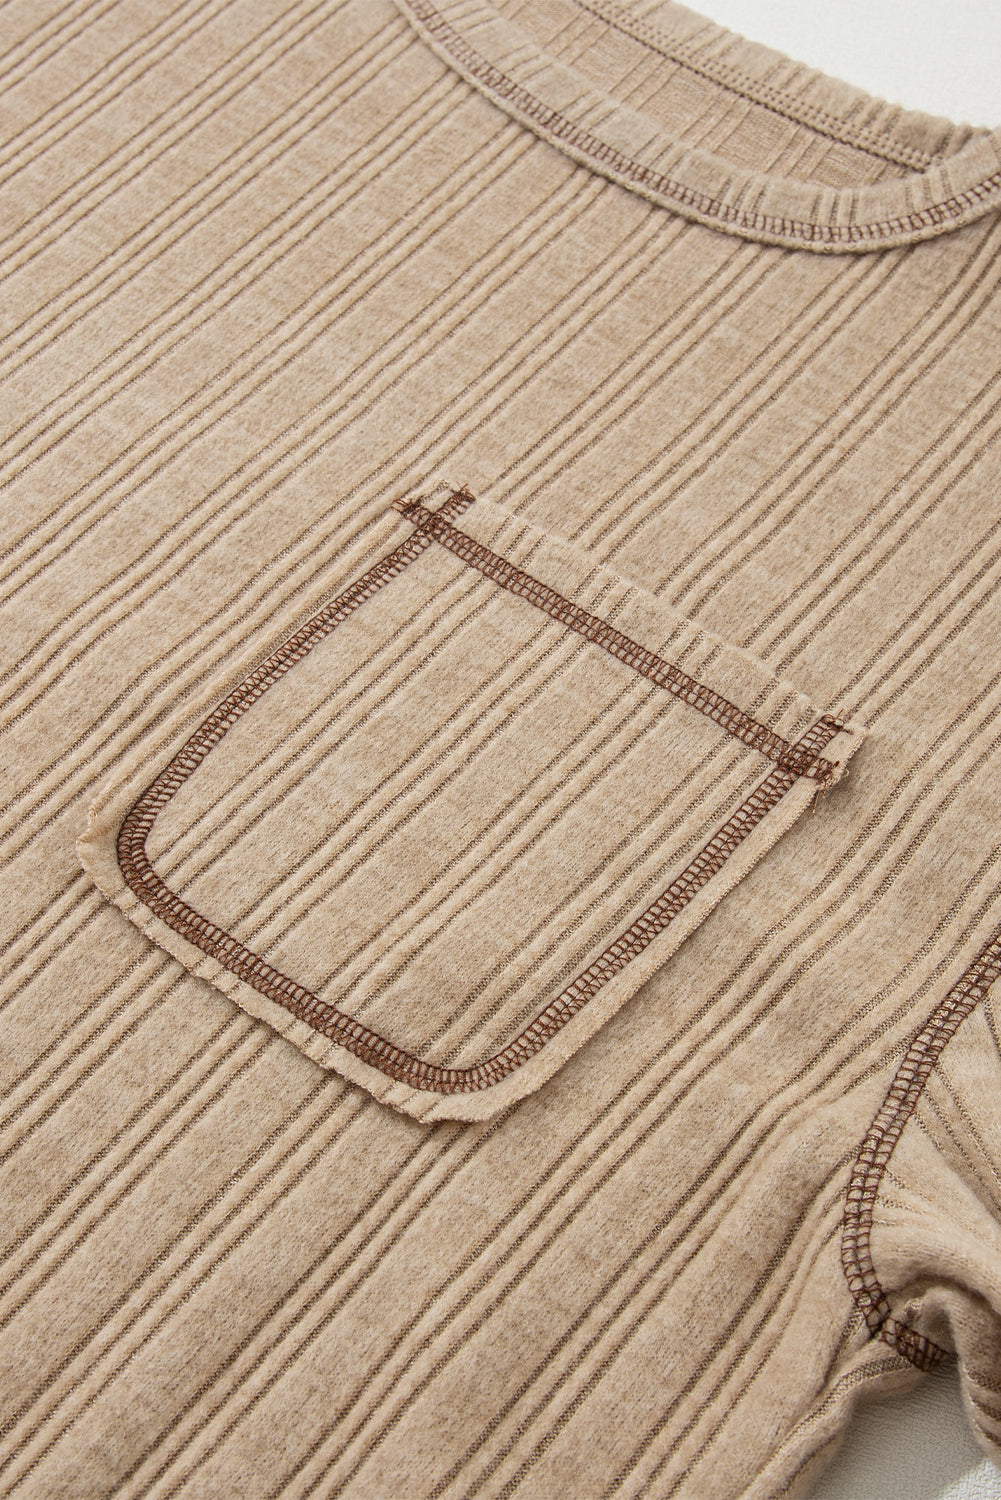 Hellkhakifarbenes, lockeres, strukturiertes Strickoberteil mit sichtbaren Nähten